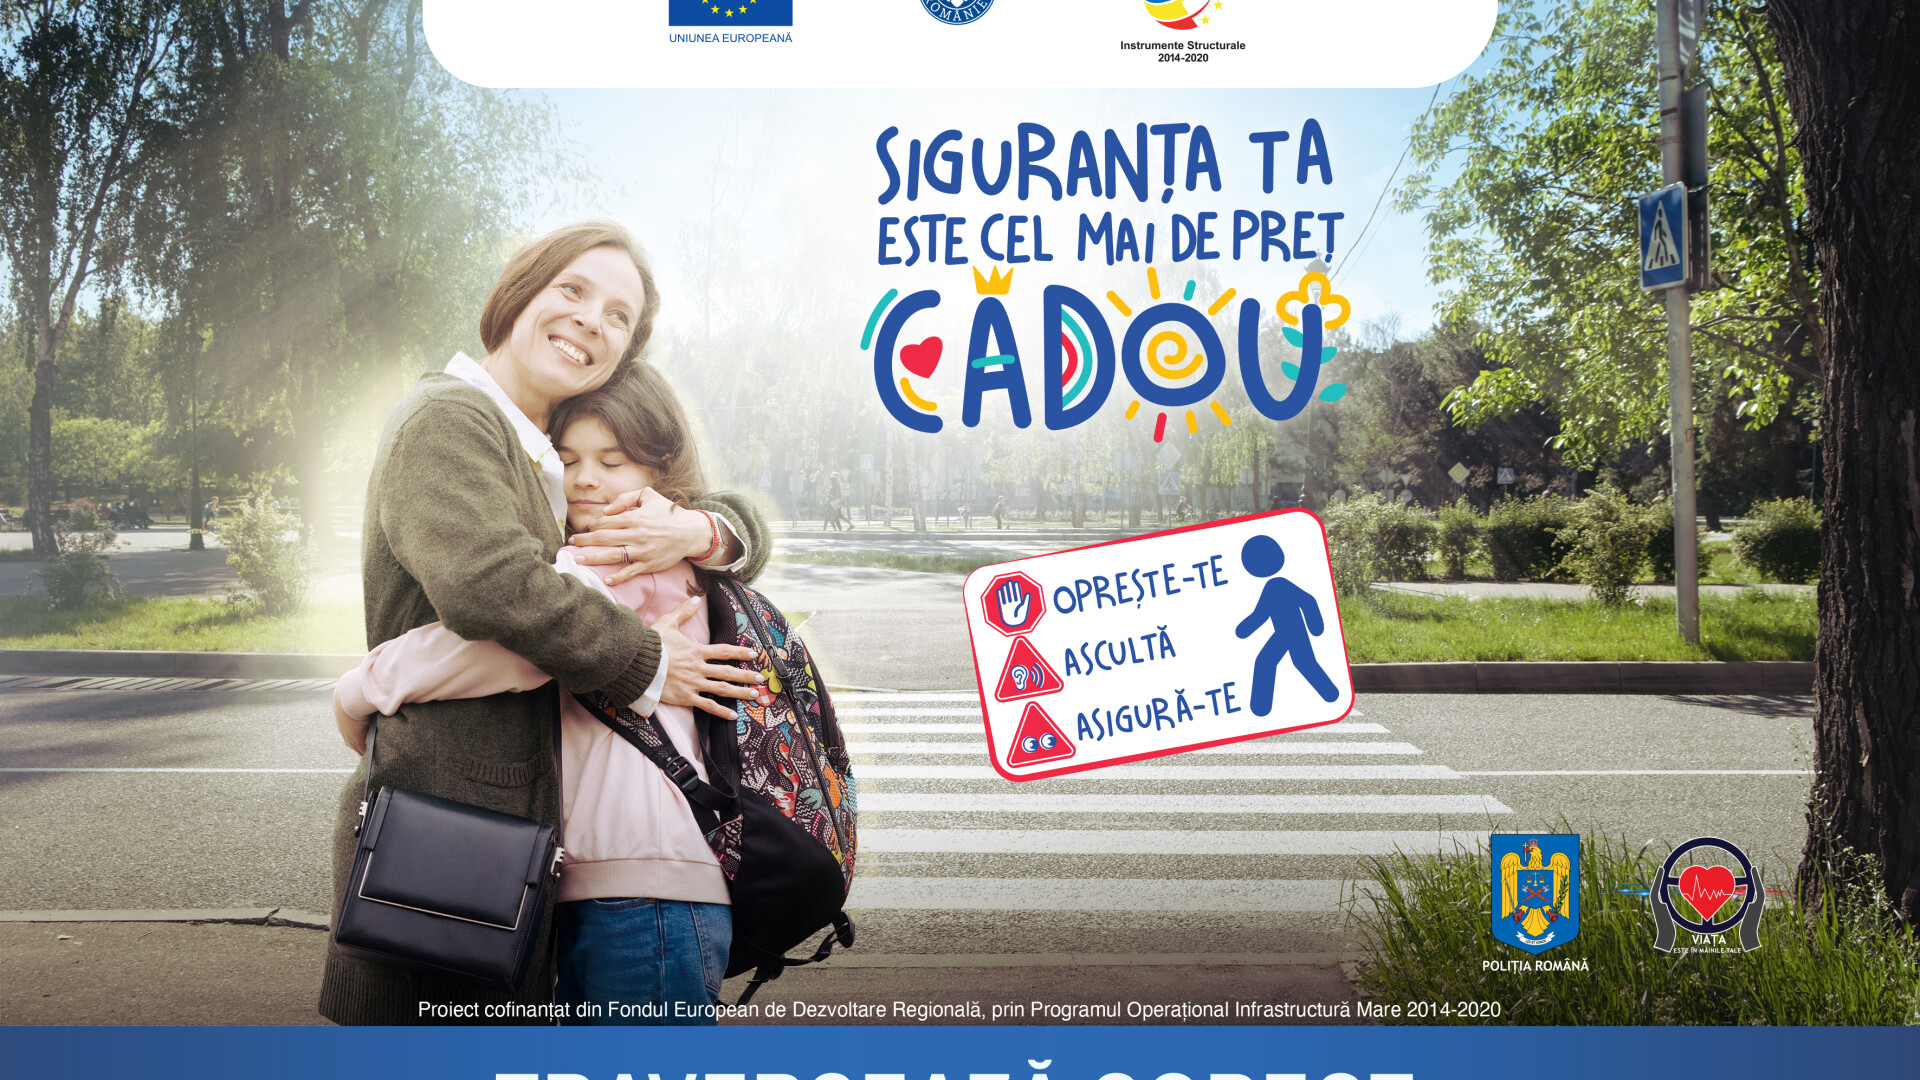 (P) Poliția Română încheie seria campaniilor de educație rutieră cu un mesaj adresat părinților și copiilor